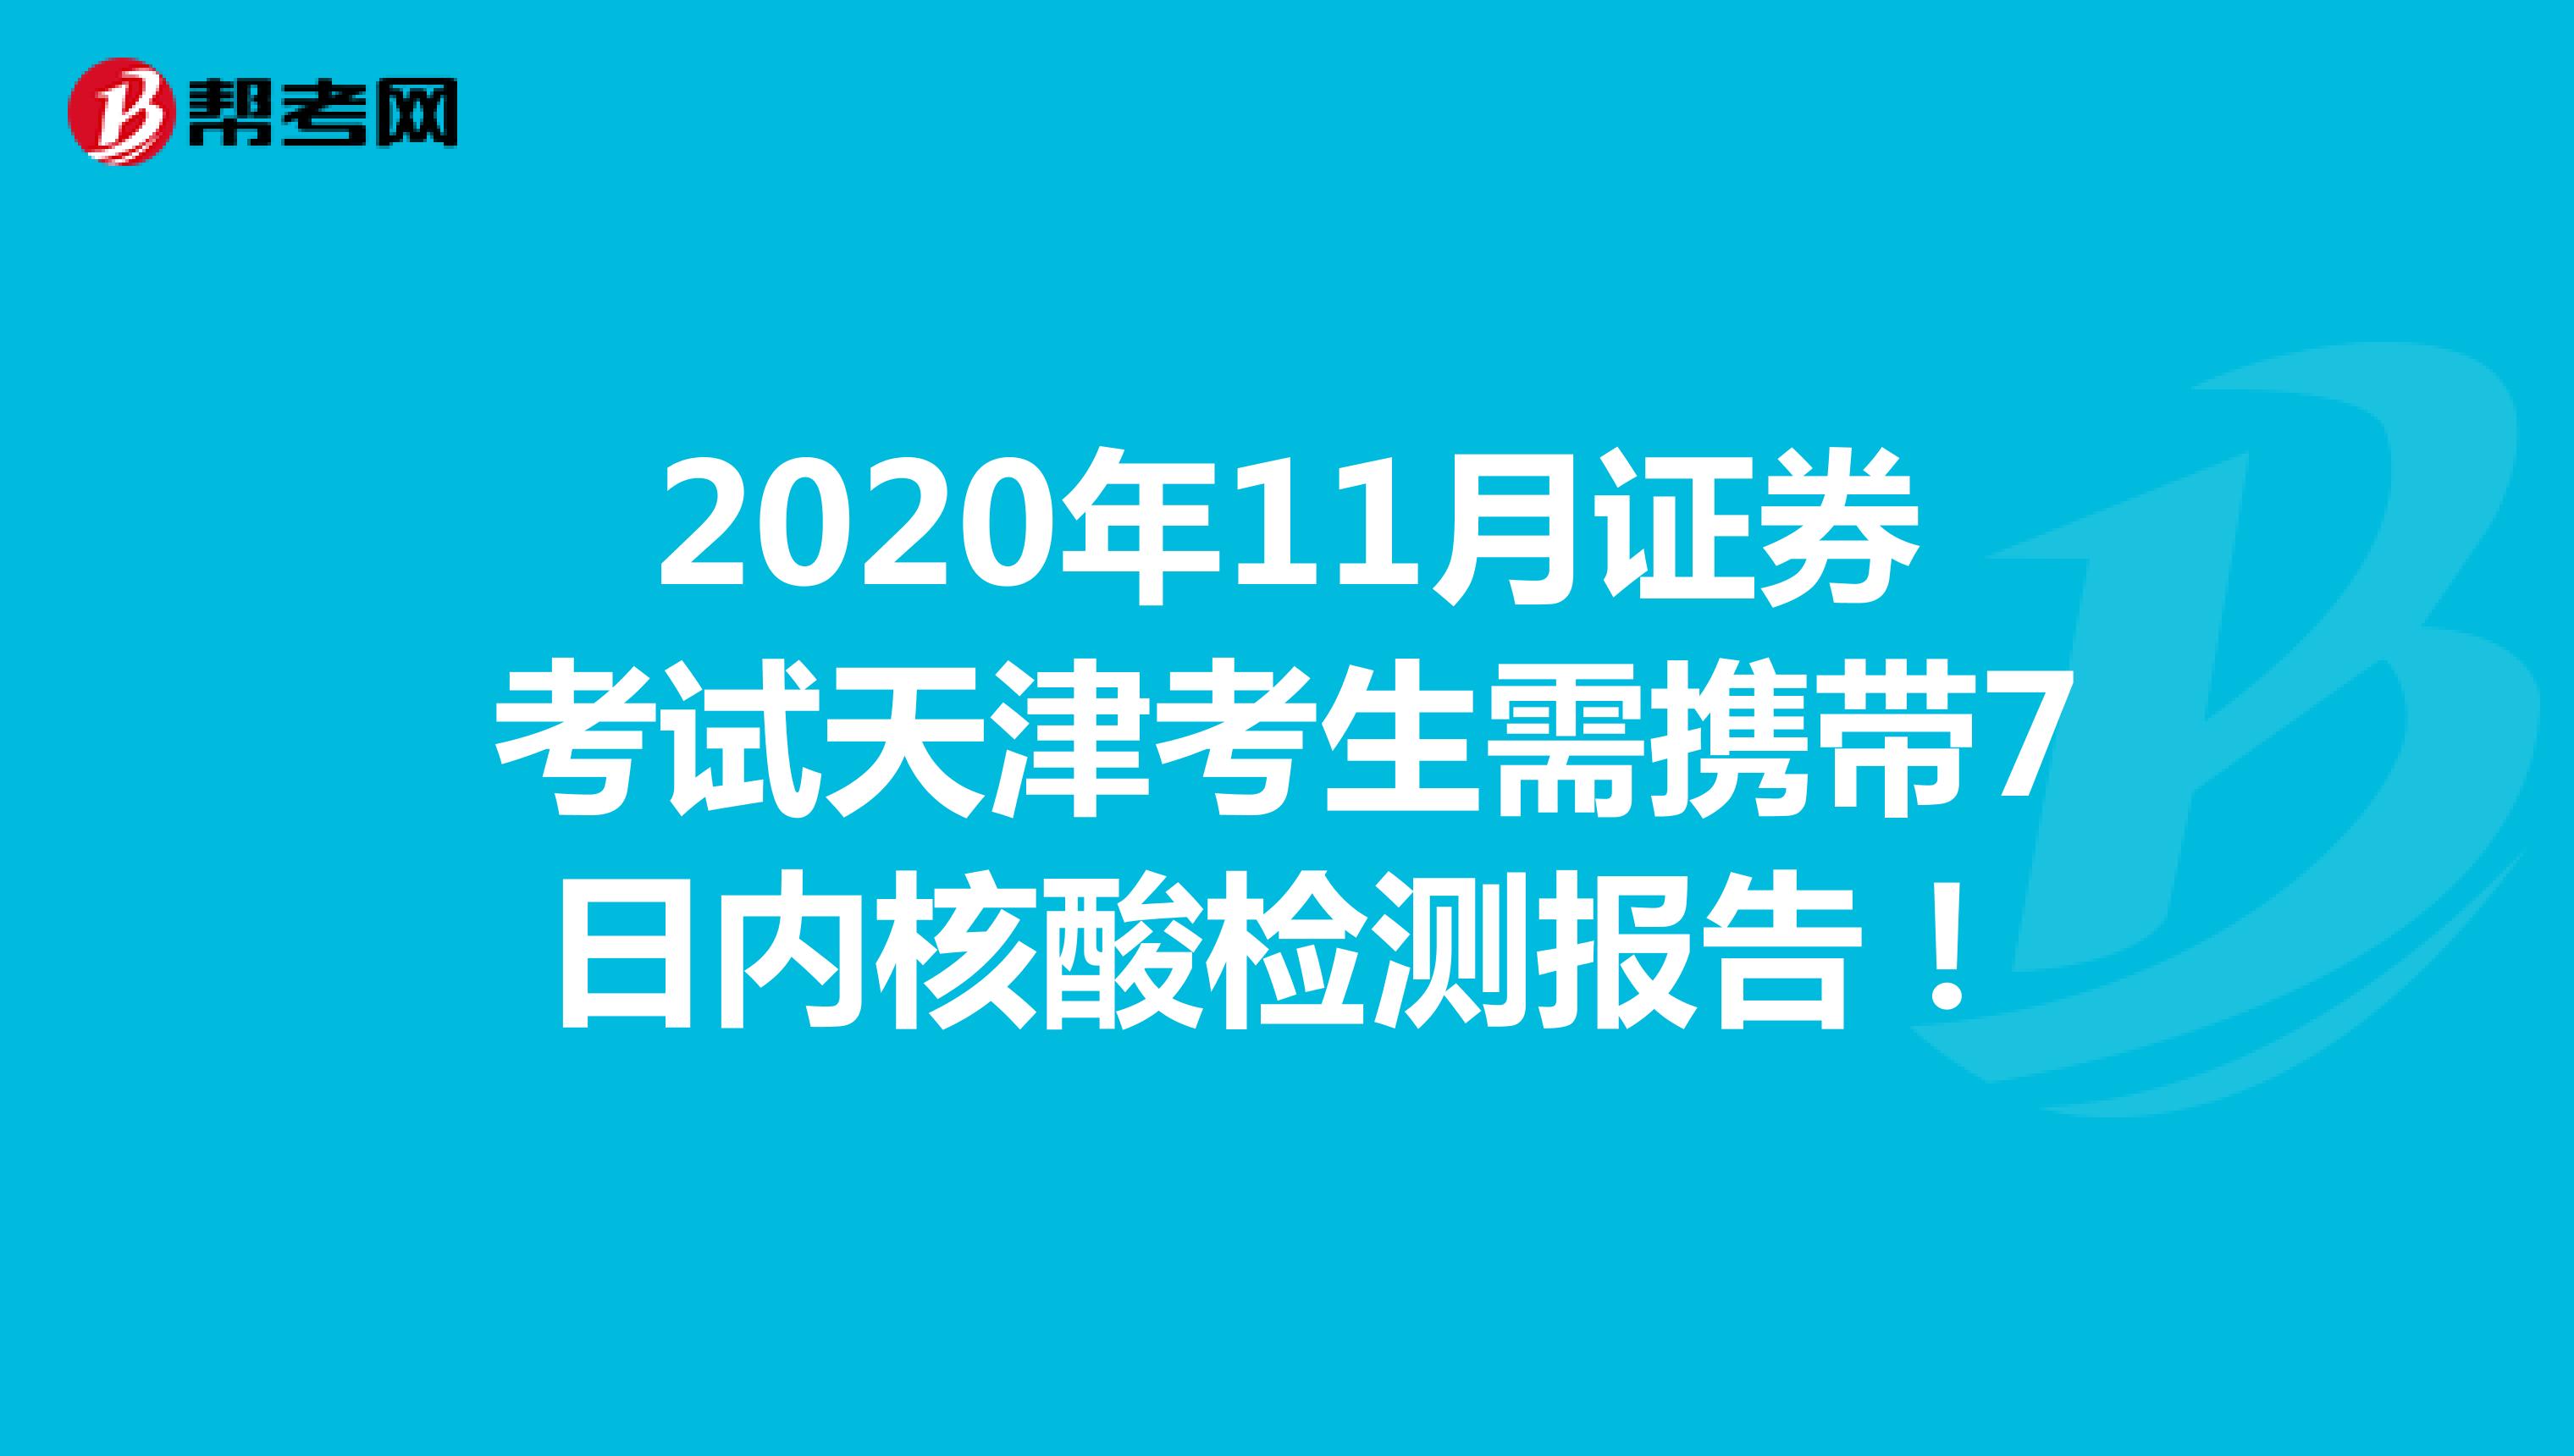 通知：2020年11月证券资格考试天津考生需携带7日内核酸检测报告！